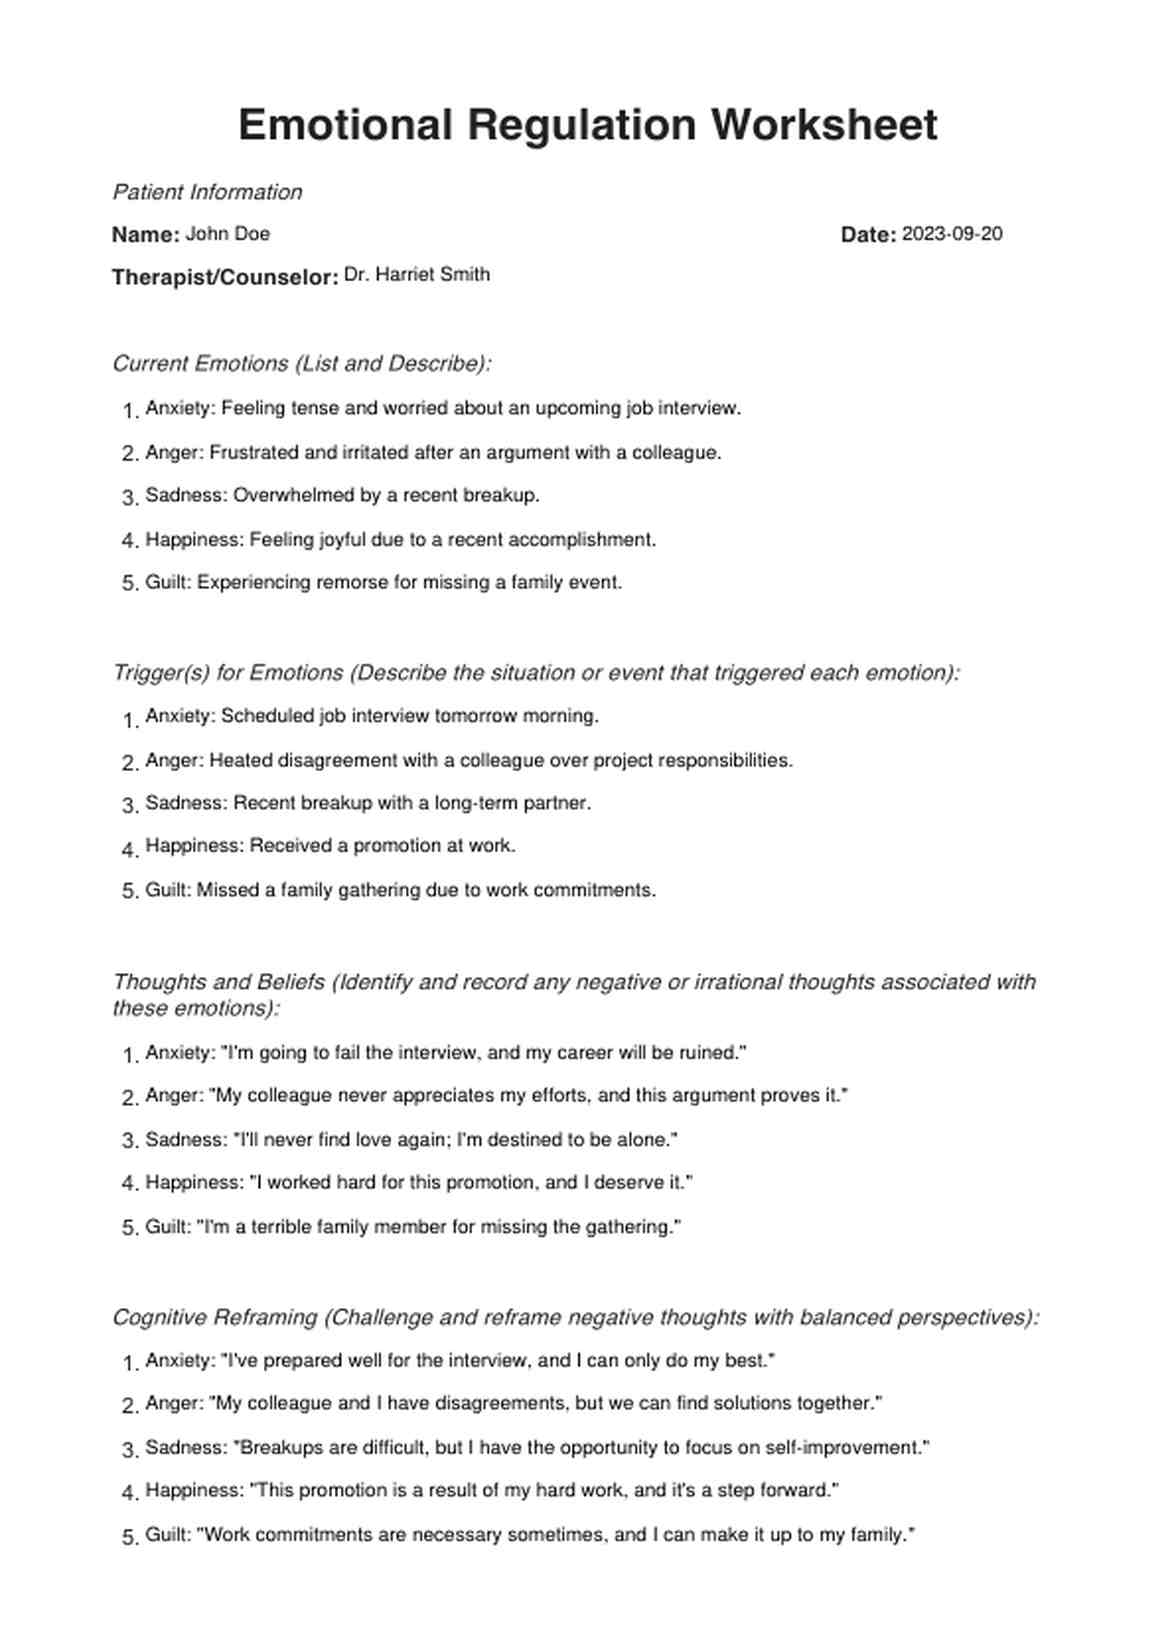 Emotional Regulation Worksheets PDF Example